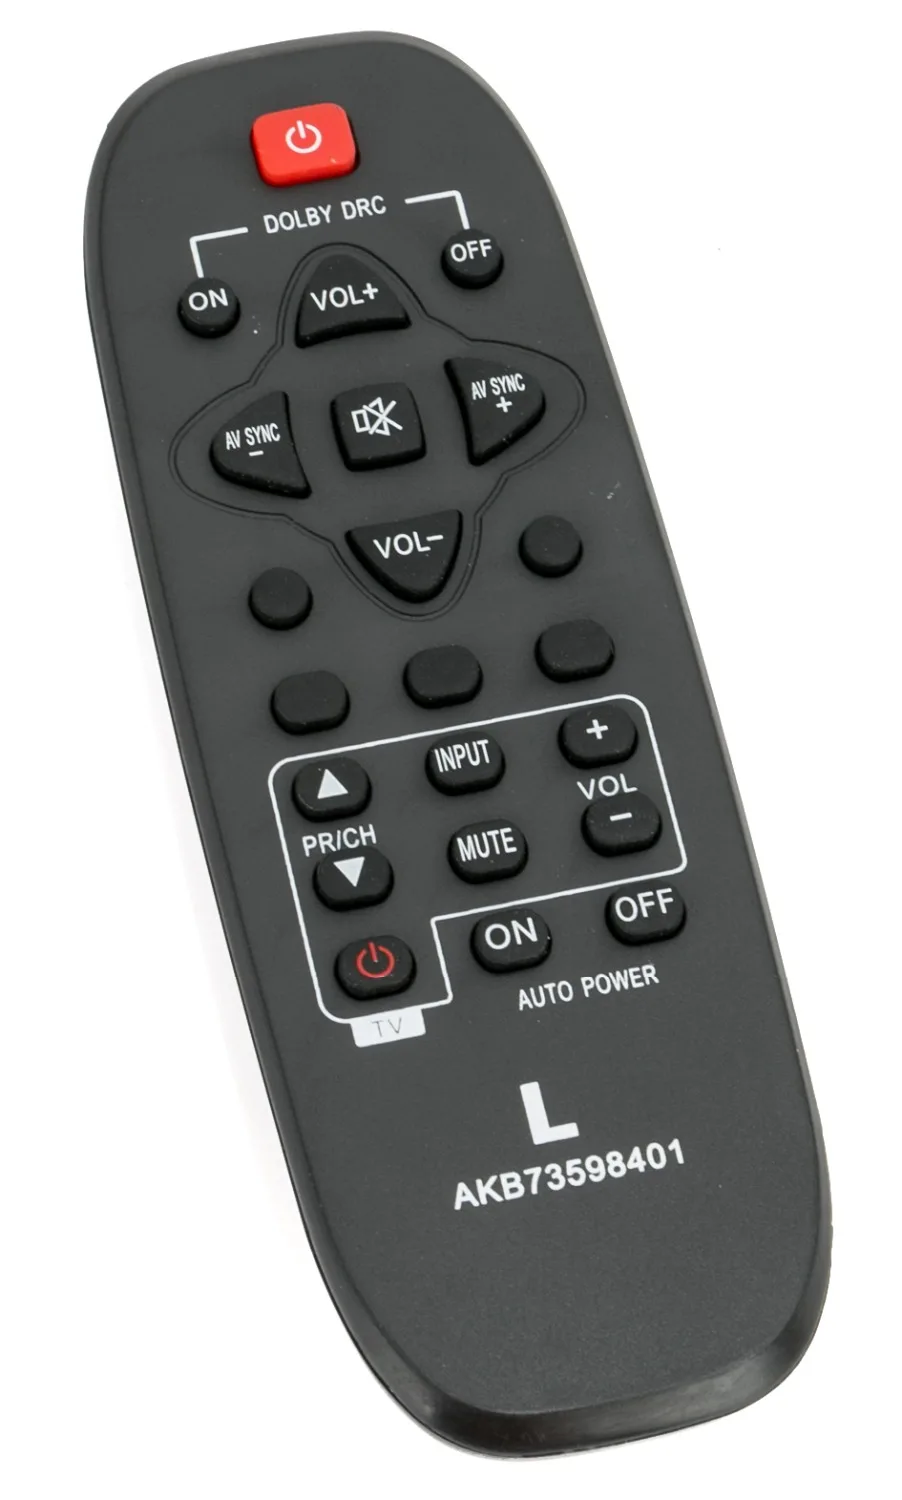 Пульт дистанционного управления AKB73598401 подходит для LG Саундбар NB2022A NB2030A NB2020A звуковая панель аудио система